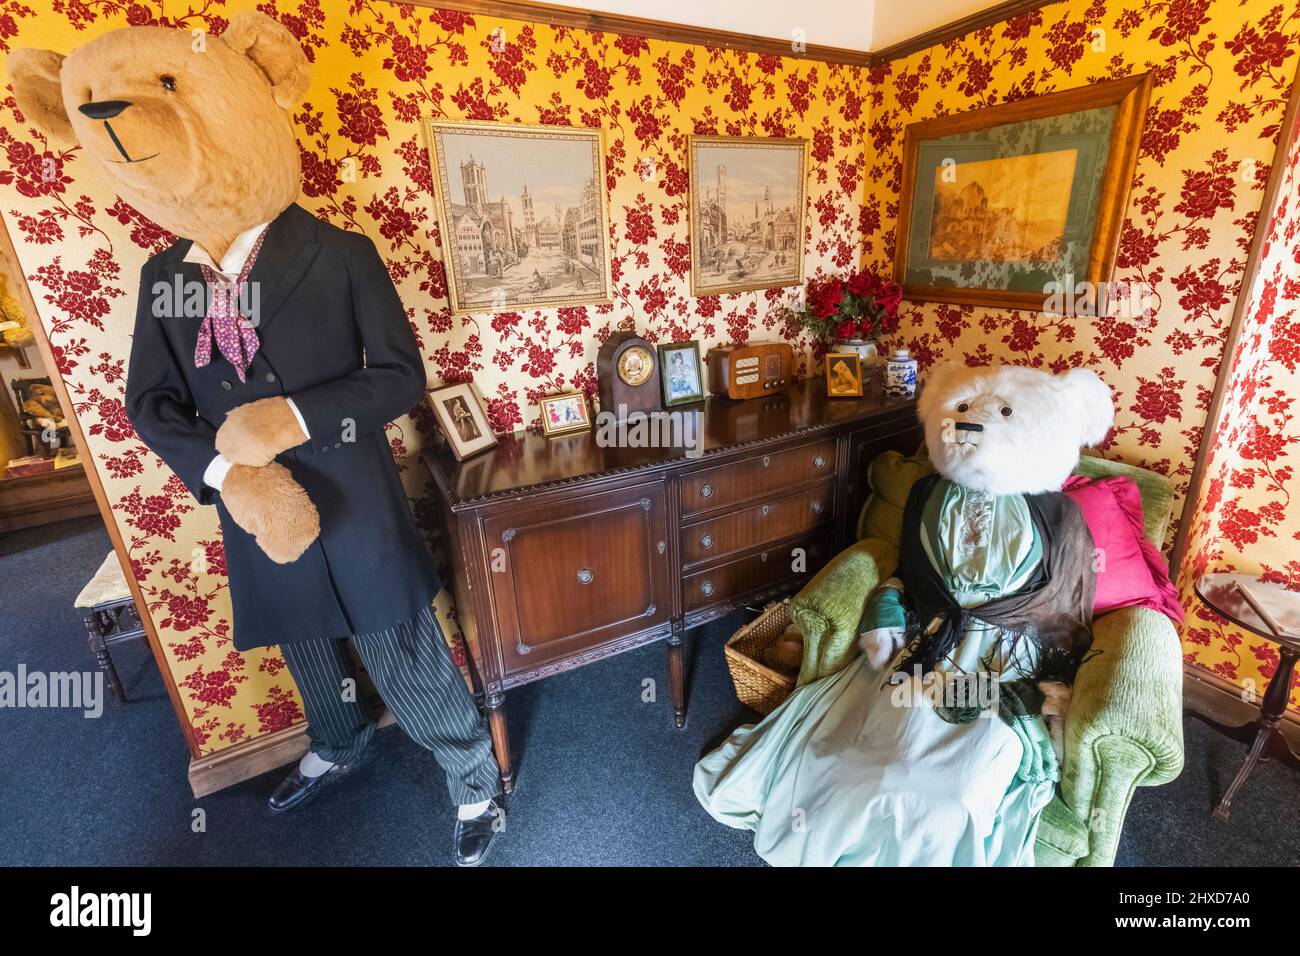 Inghilterra, Dorset, Dorchester, il Museo dell'Orso Teddy, mostra degli Orsi Teddy a grandezza naturale vestiti da marito e moglie in salotto Foto Stock